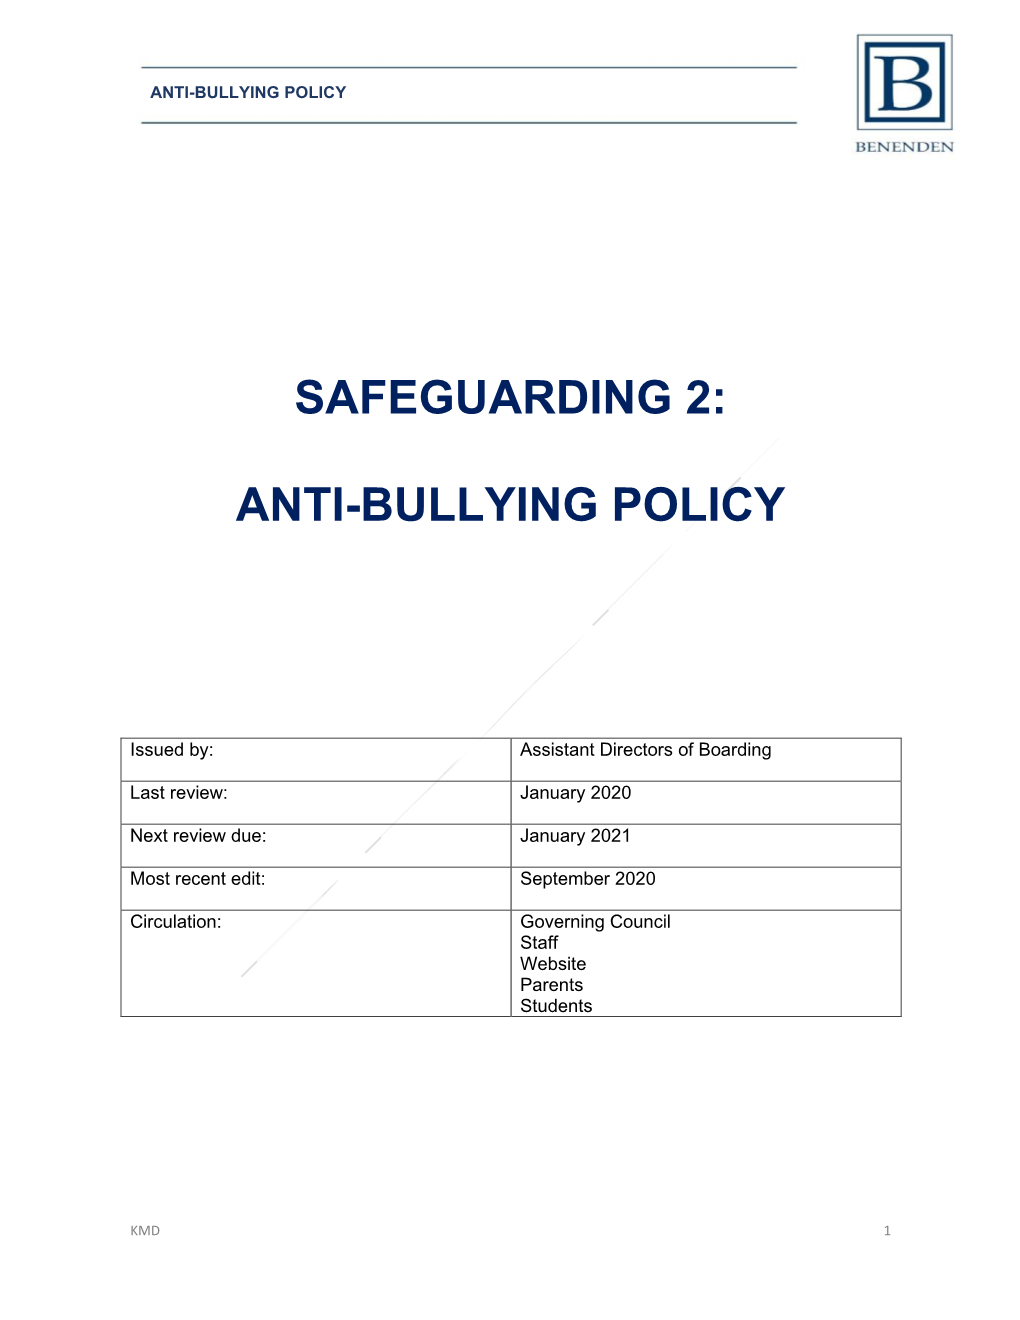 Safeguarding 2